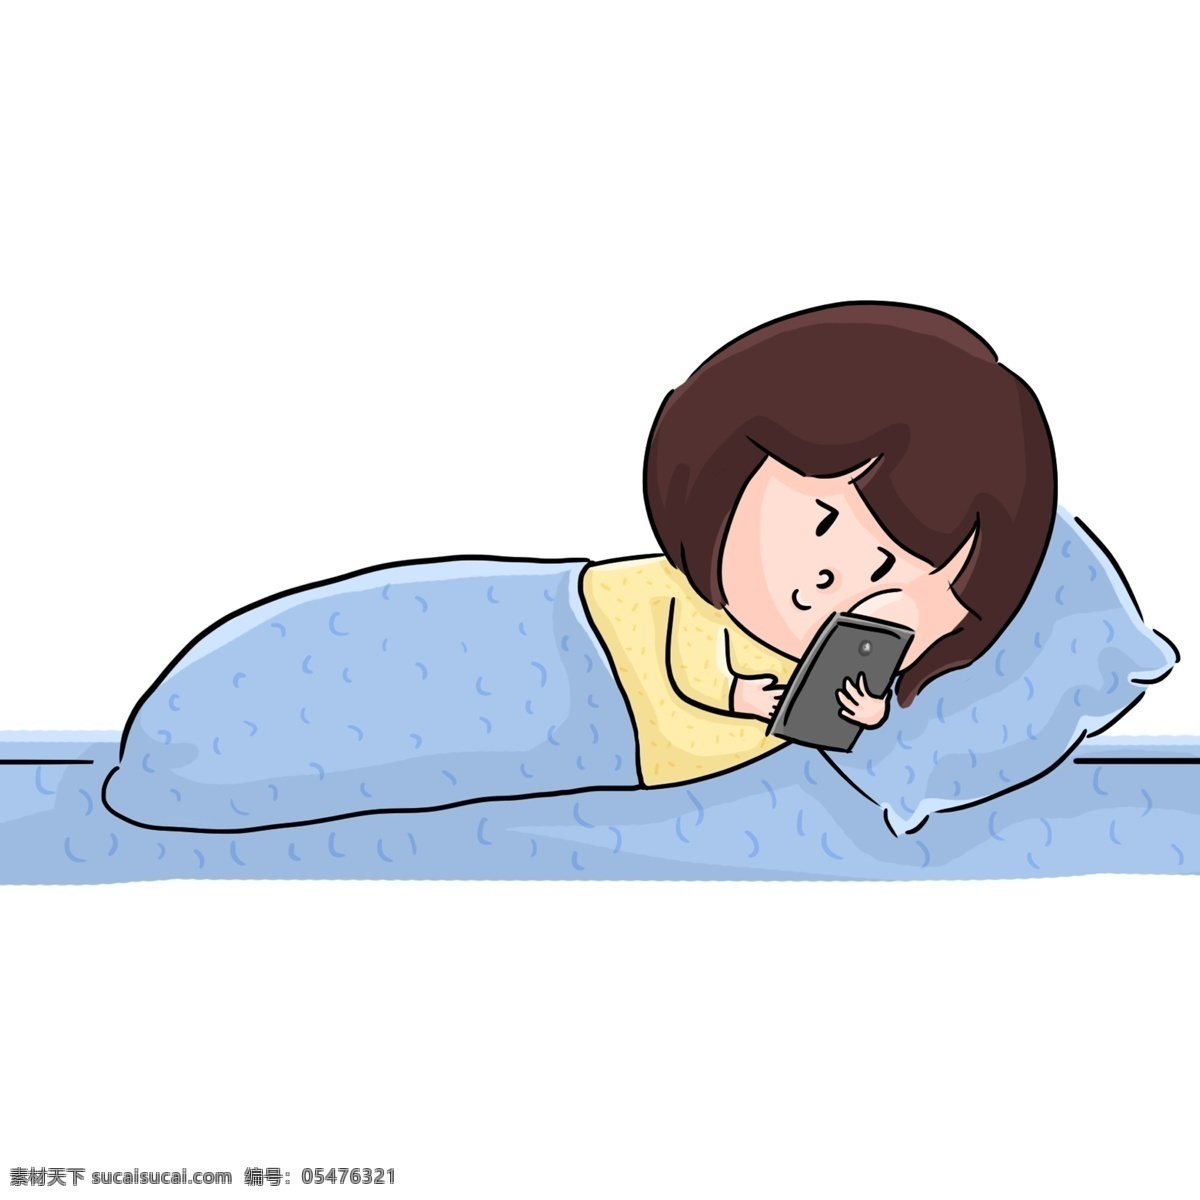 躺 床上 刷 手机 的卡 通 女孩 晚安 睡觉 朋友圈 看手机 手绘 卡通 娃娃 头 蓝色被子 刷微信